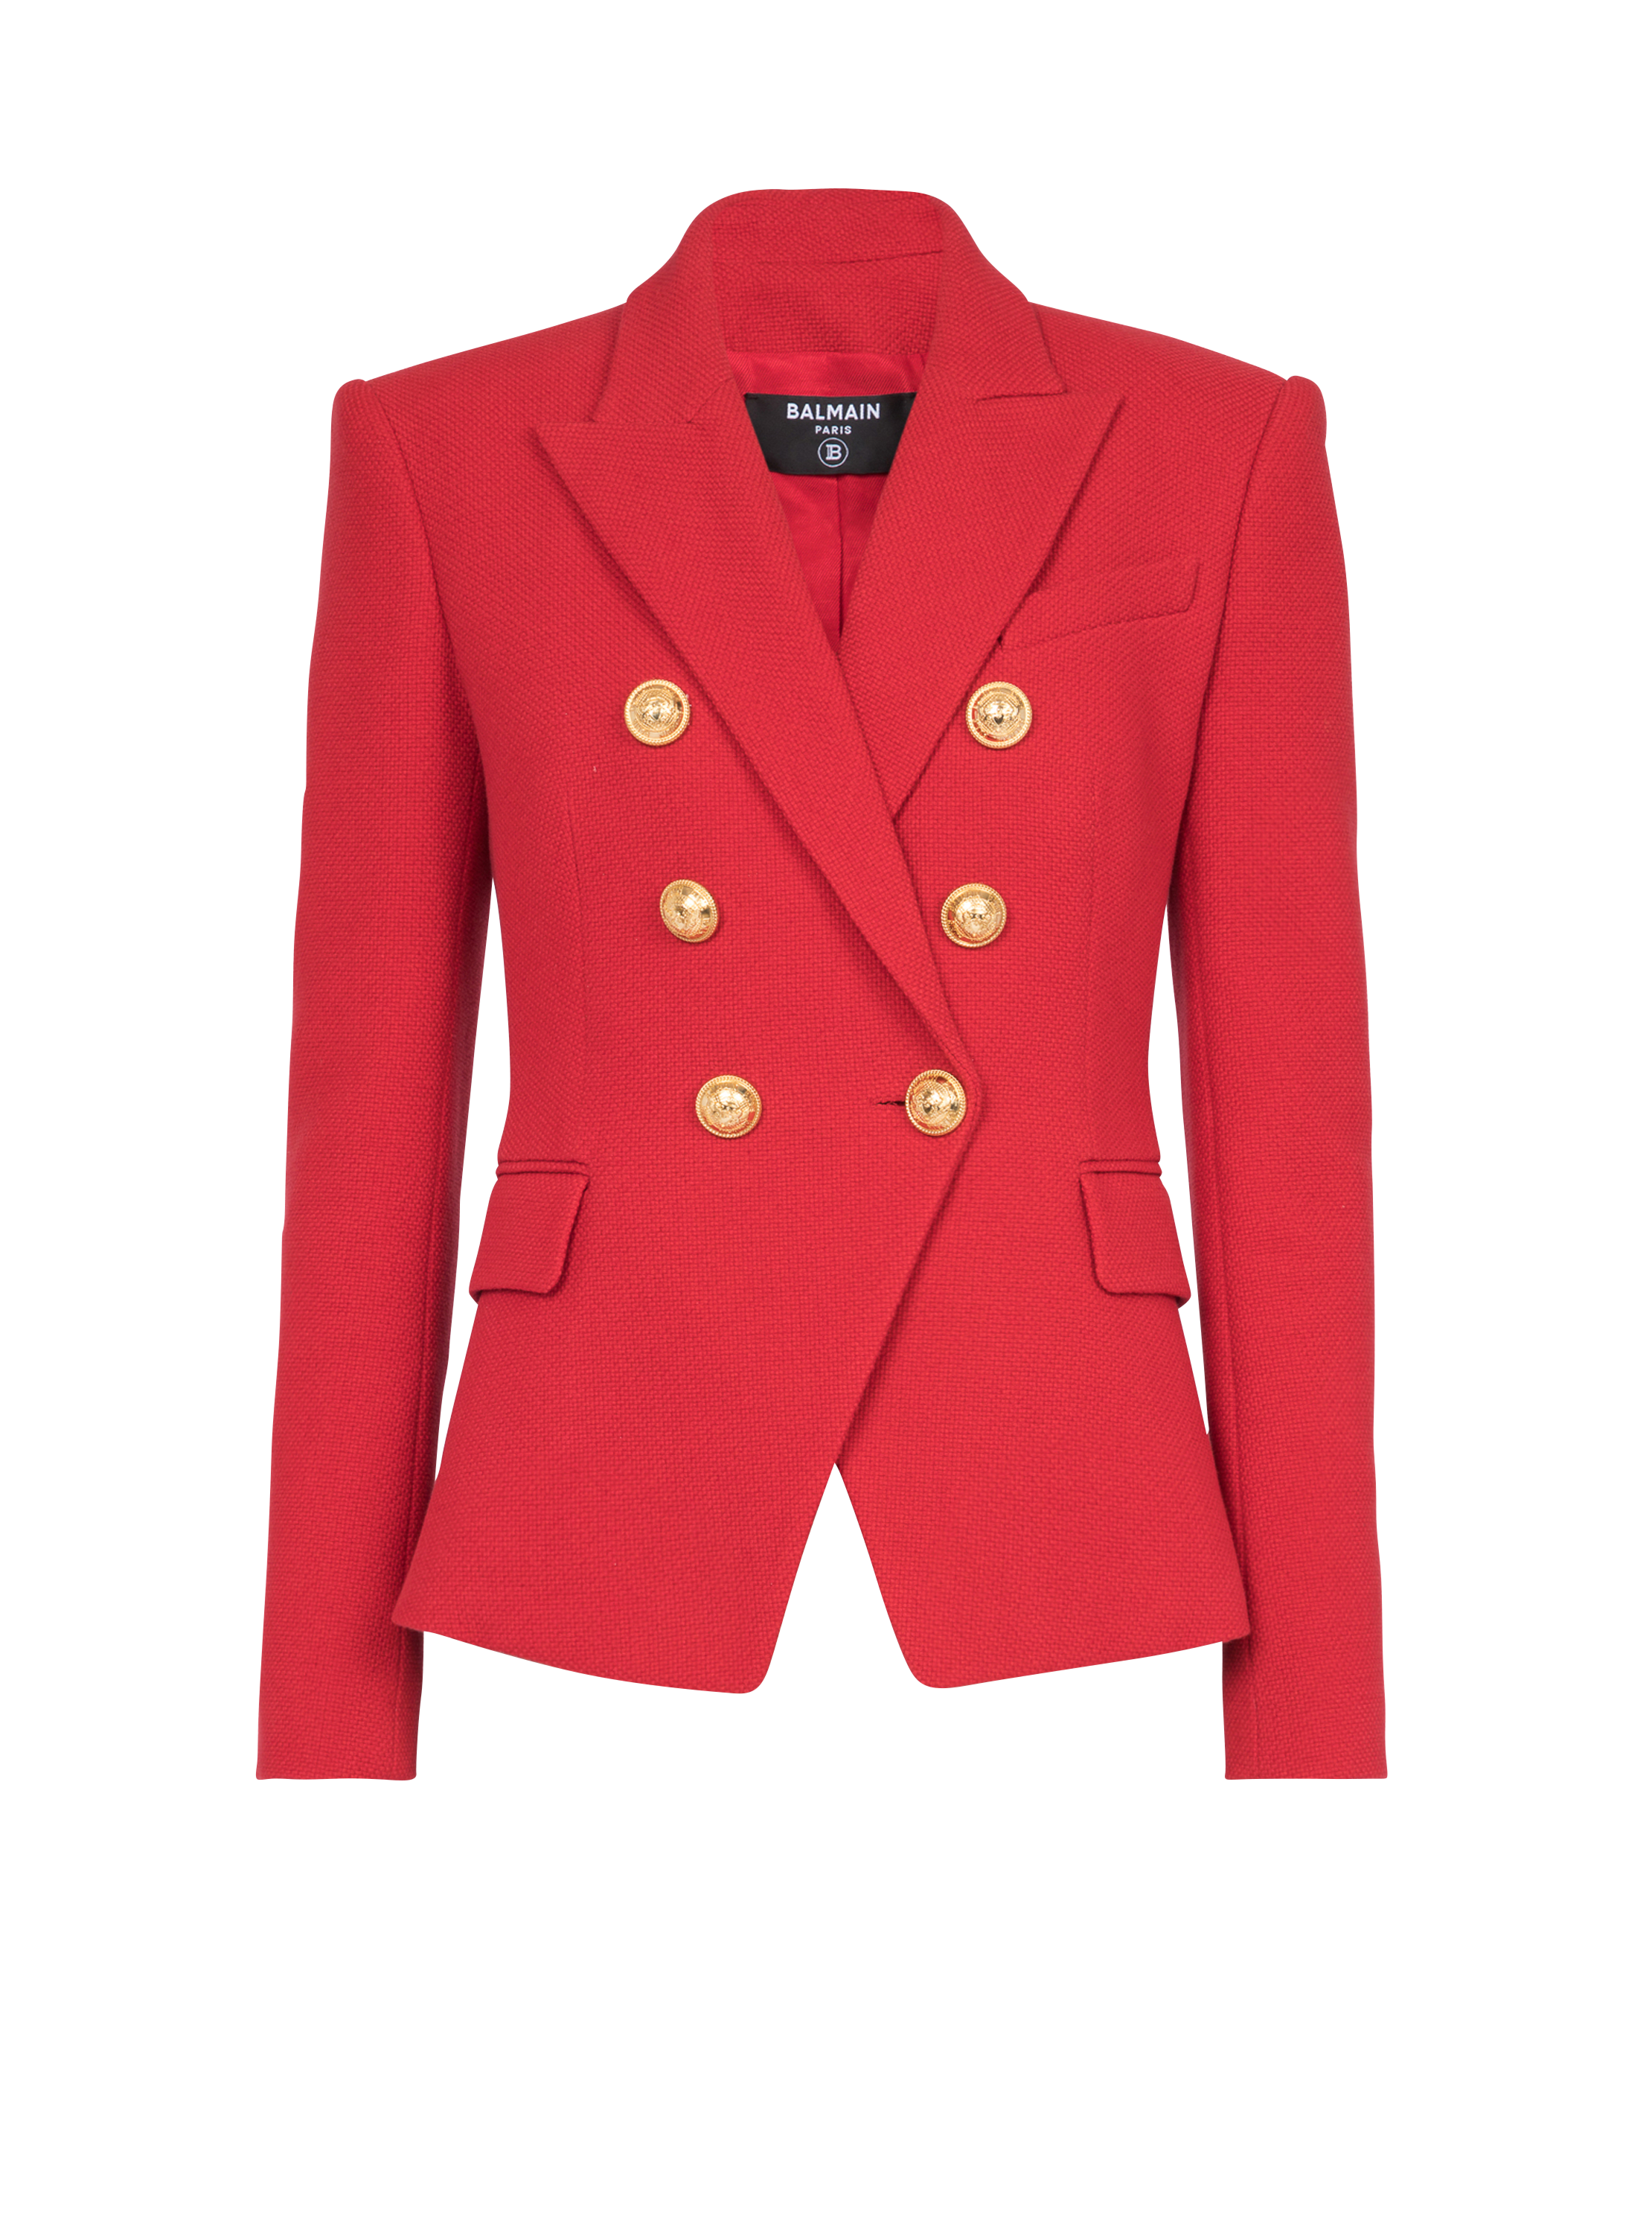 Cotton piqué double-buttoned jacket, red, hi-res